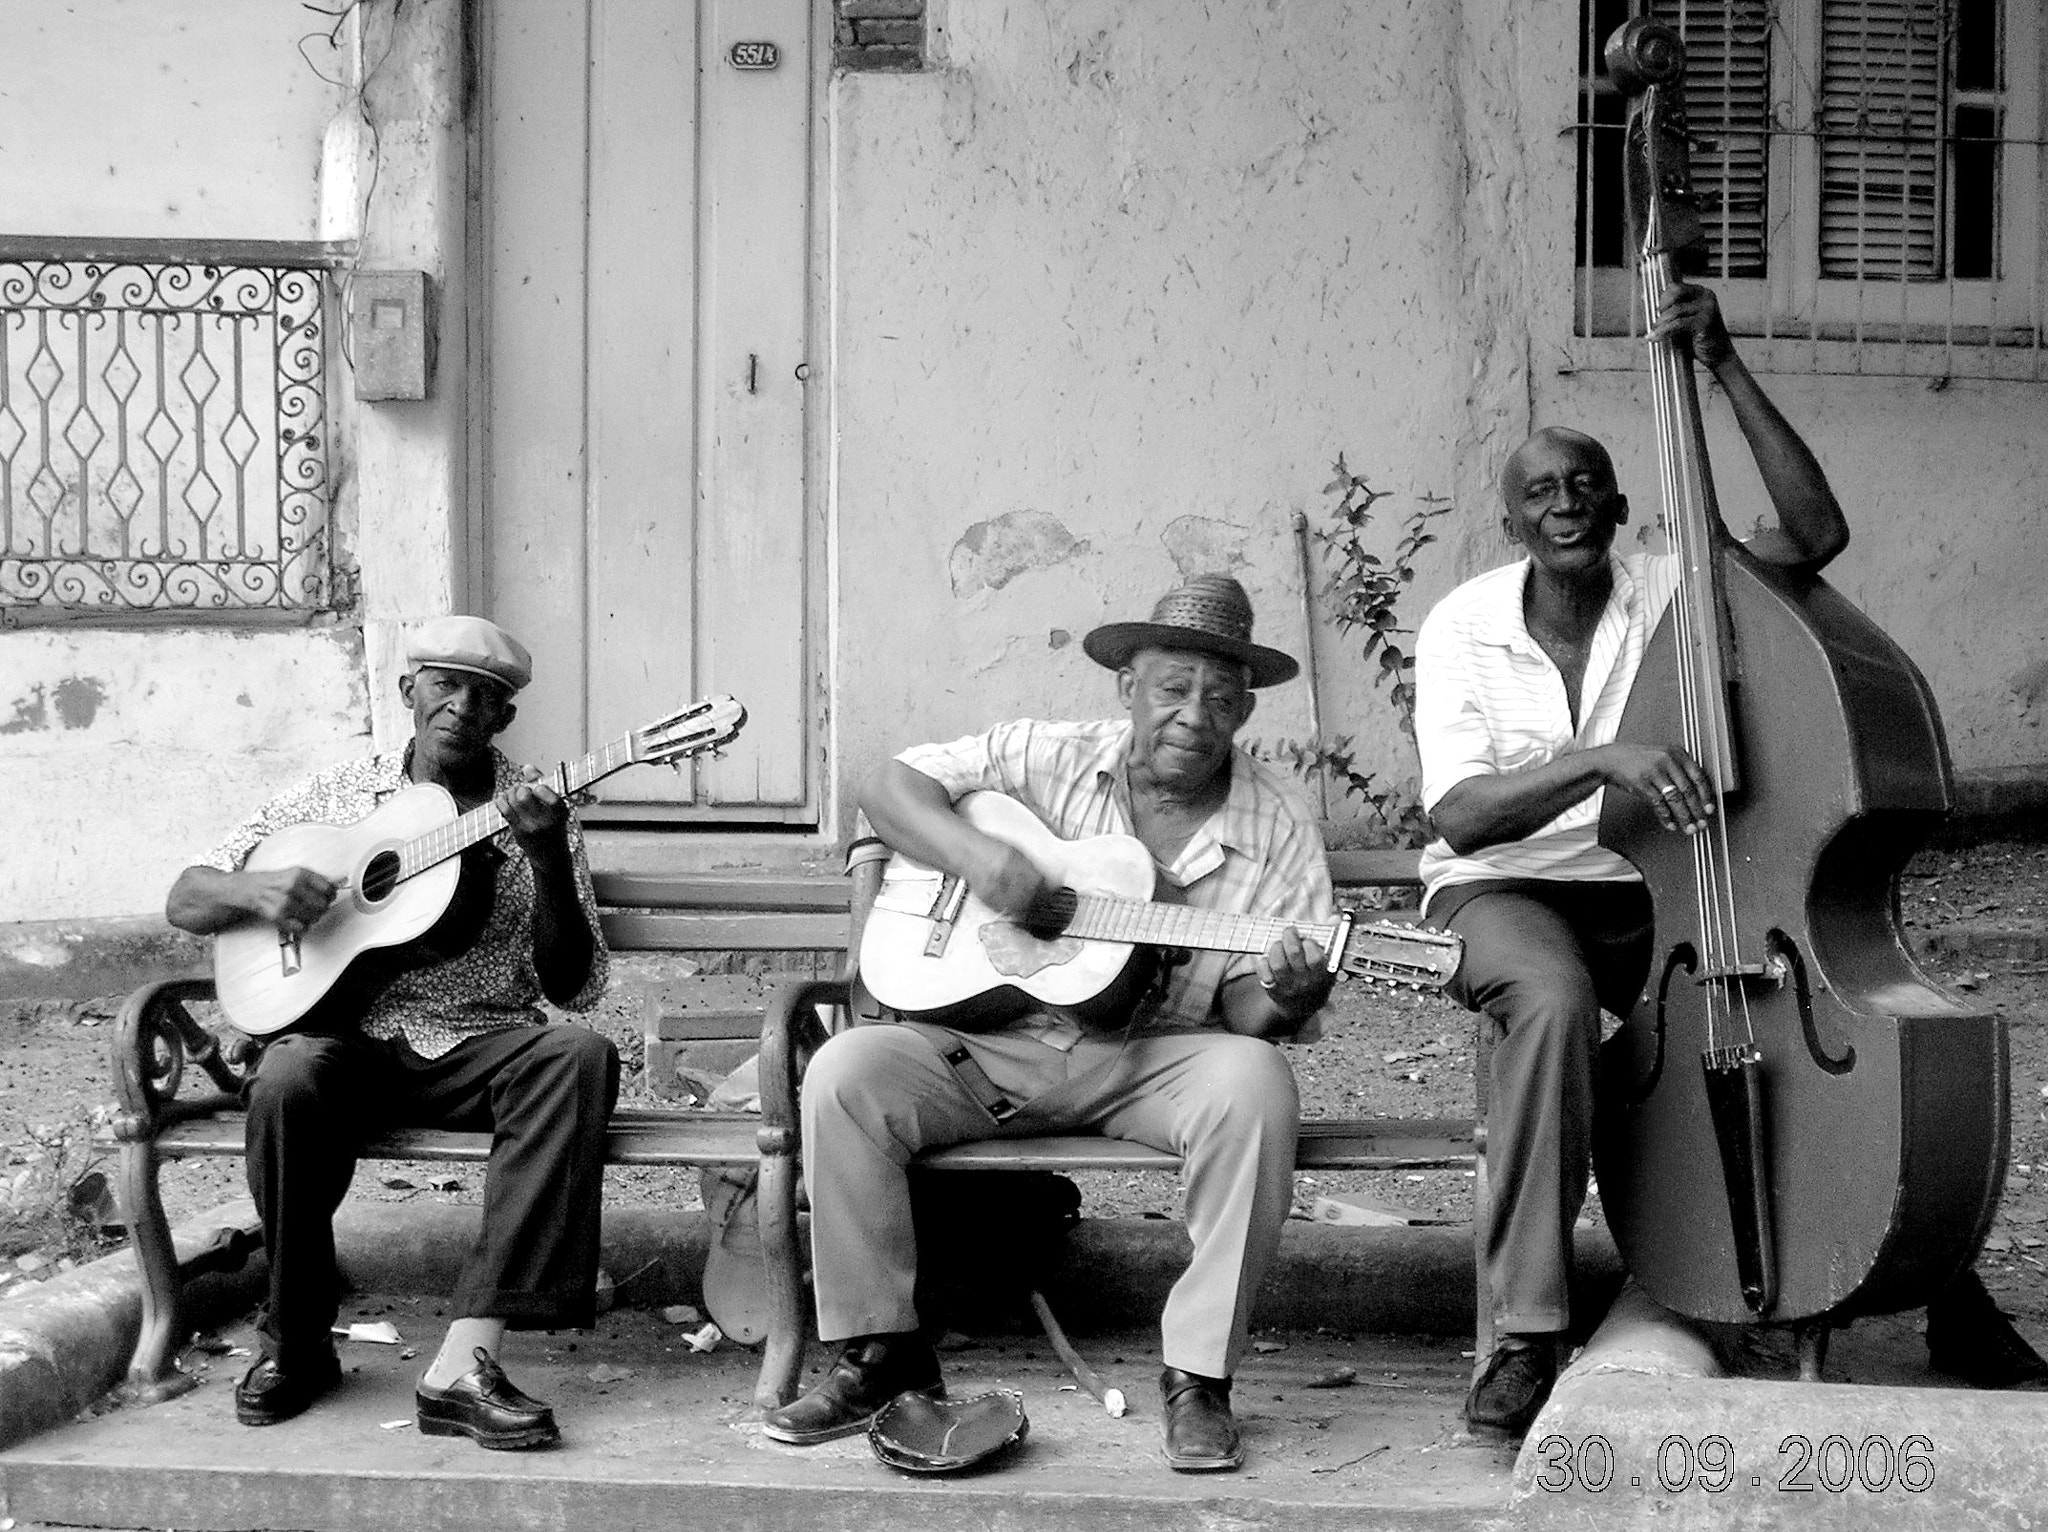 Nikon E4600 sample photo. Street musicians in santiago de cuba. photography